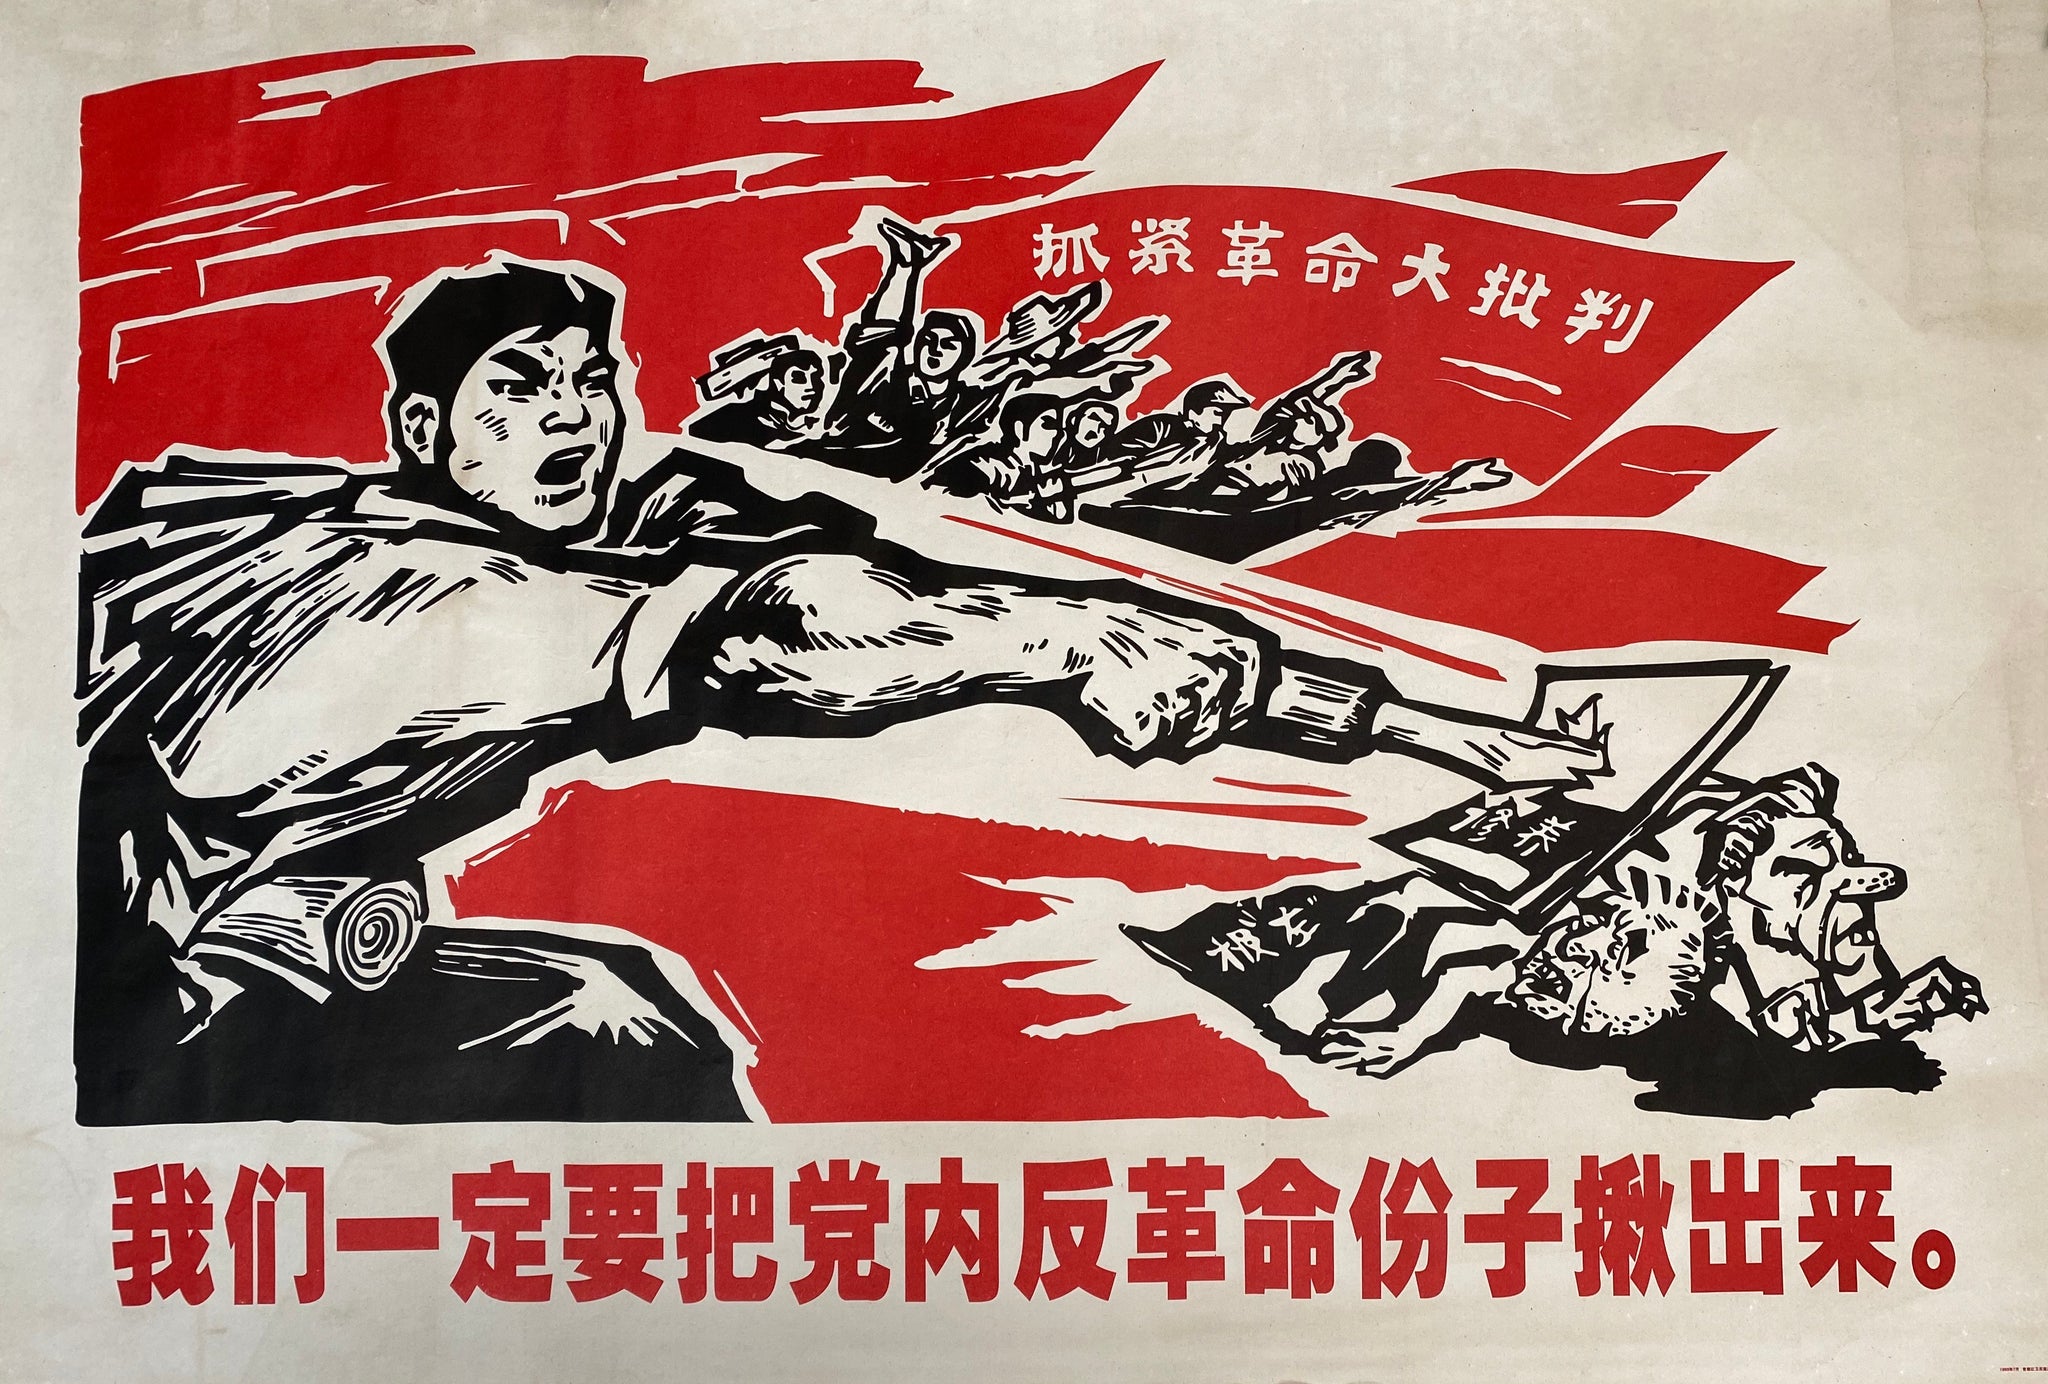 Affiche Propagande Chinoise - Mao Zedong 1960